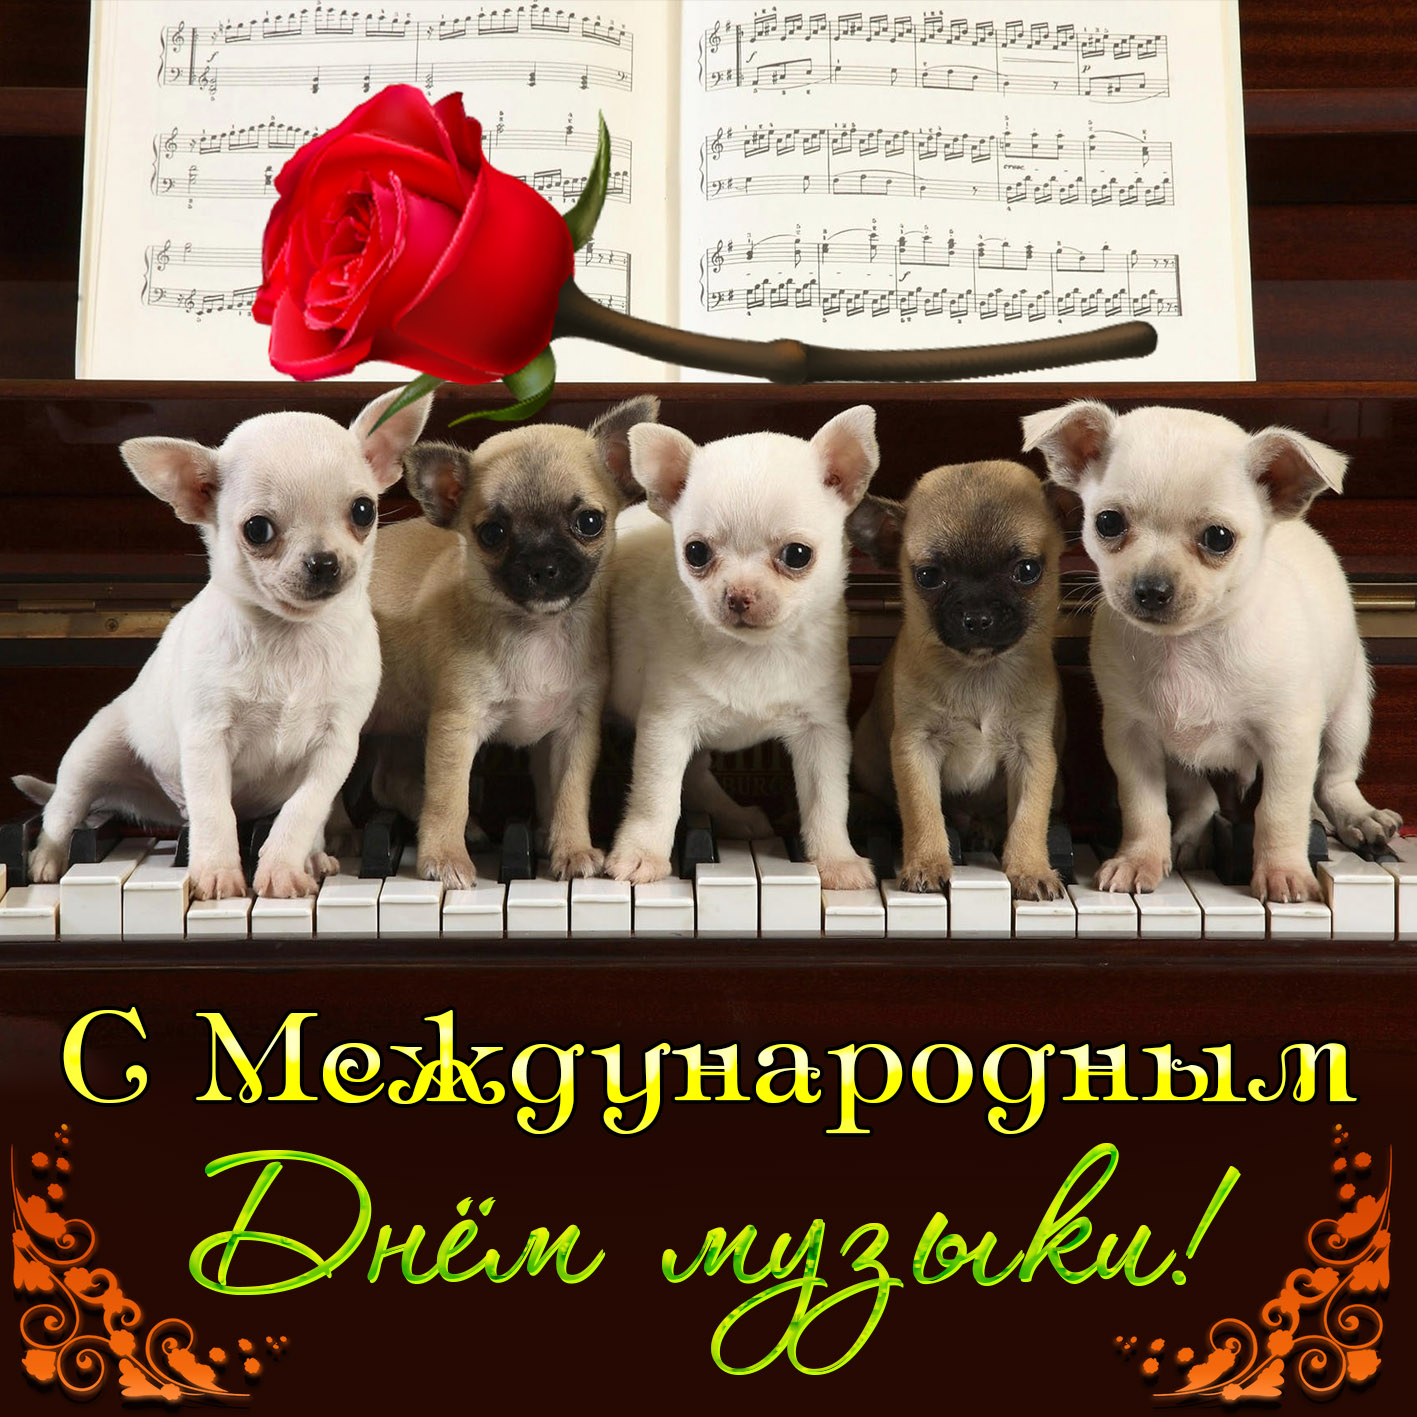 Открытка на День музыки - милые собачки сидят на клавишах